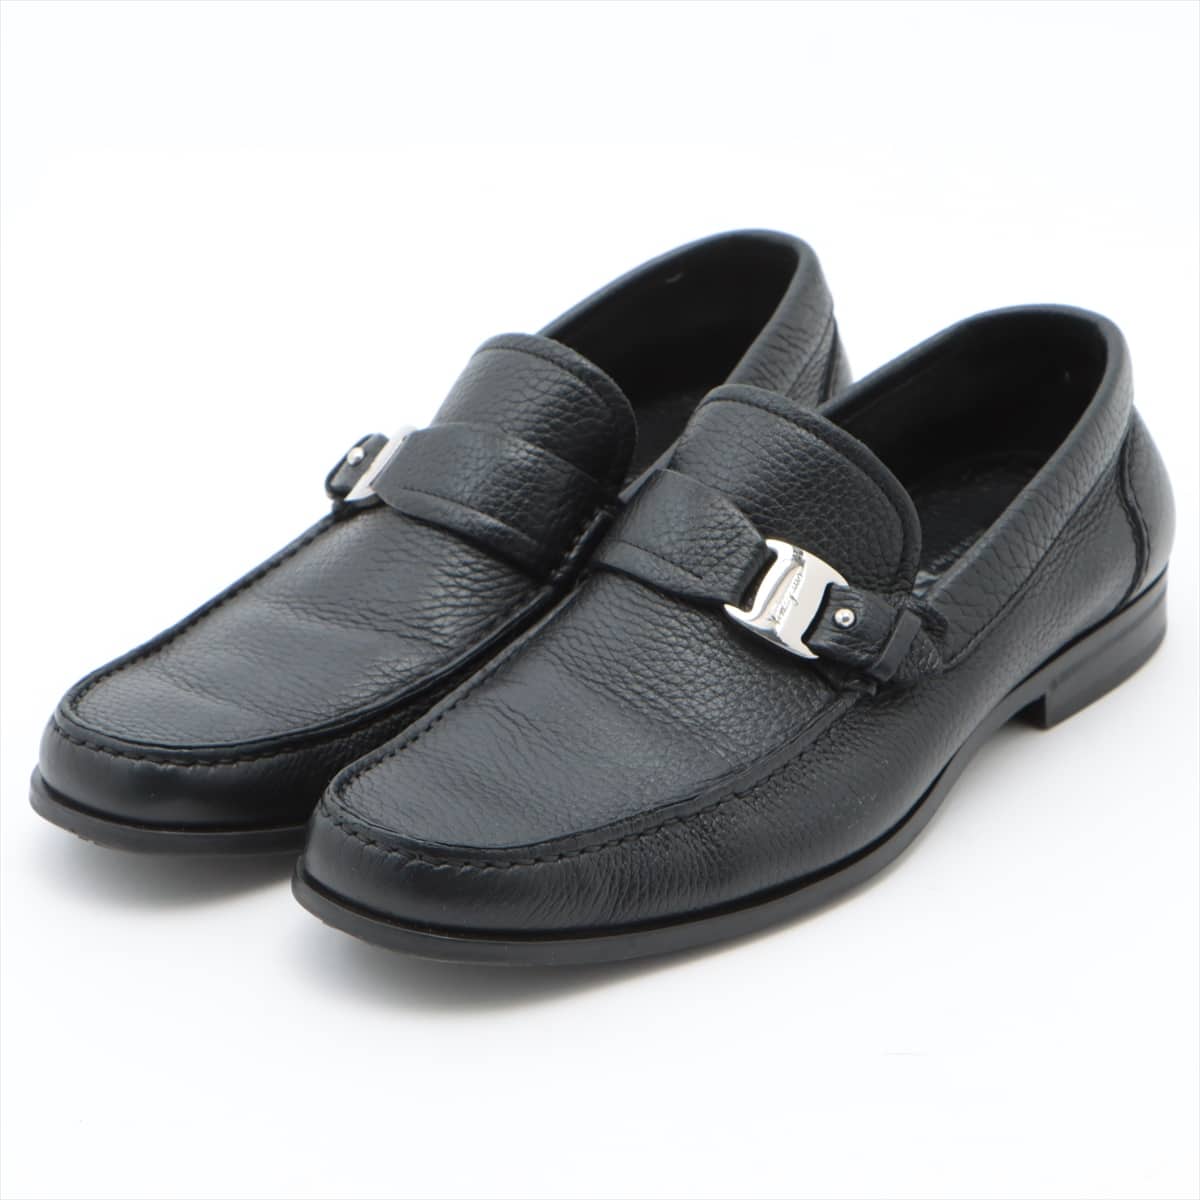 Ferragamo Leather Loafer 6EE Men's Black